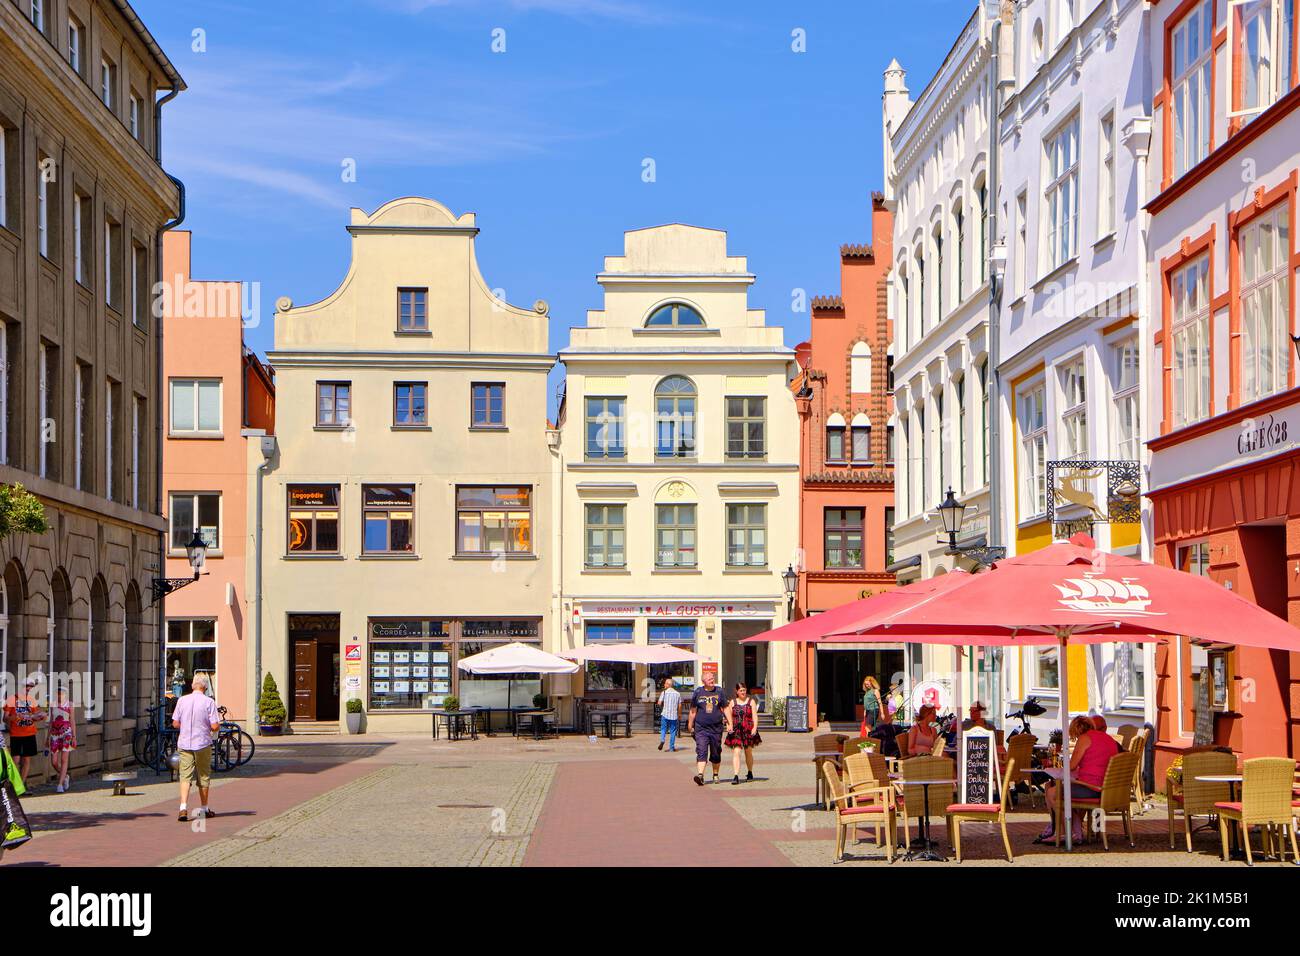 Paisaje urbano y escena animada de todos los días, Ciudad hanseática de Wismar, Mecklemburgo-Pomerania Occidental, Alemania, Europa, 8 de agosto, 2020. Foto de stock